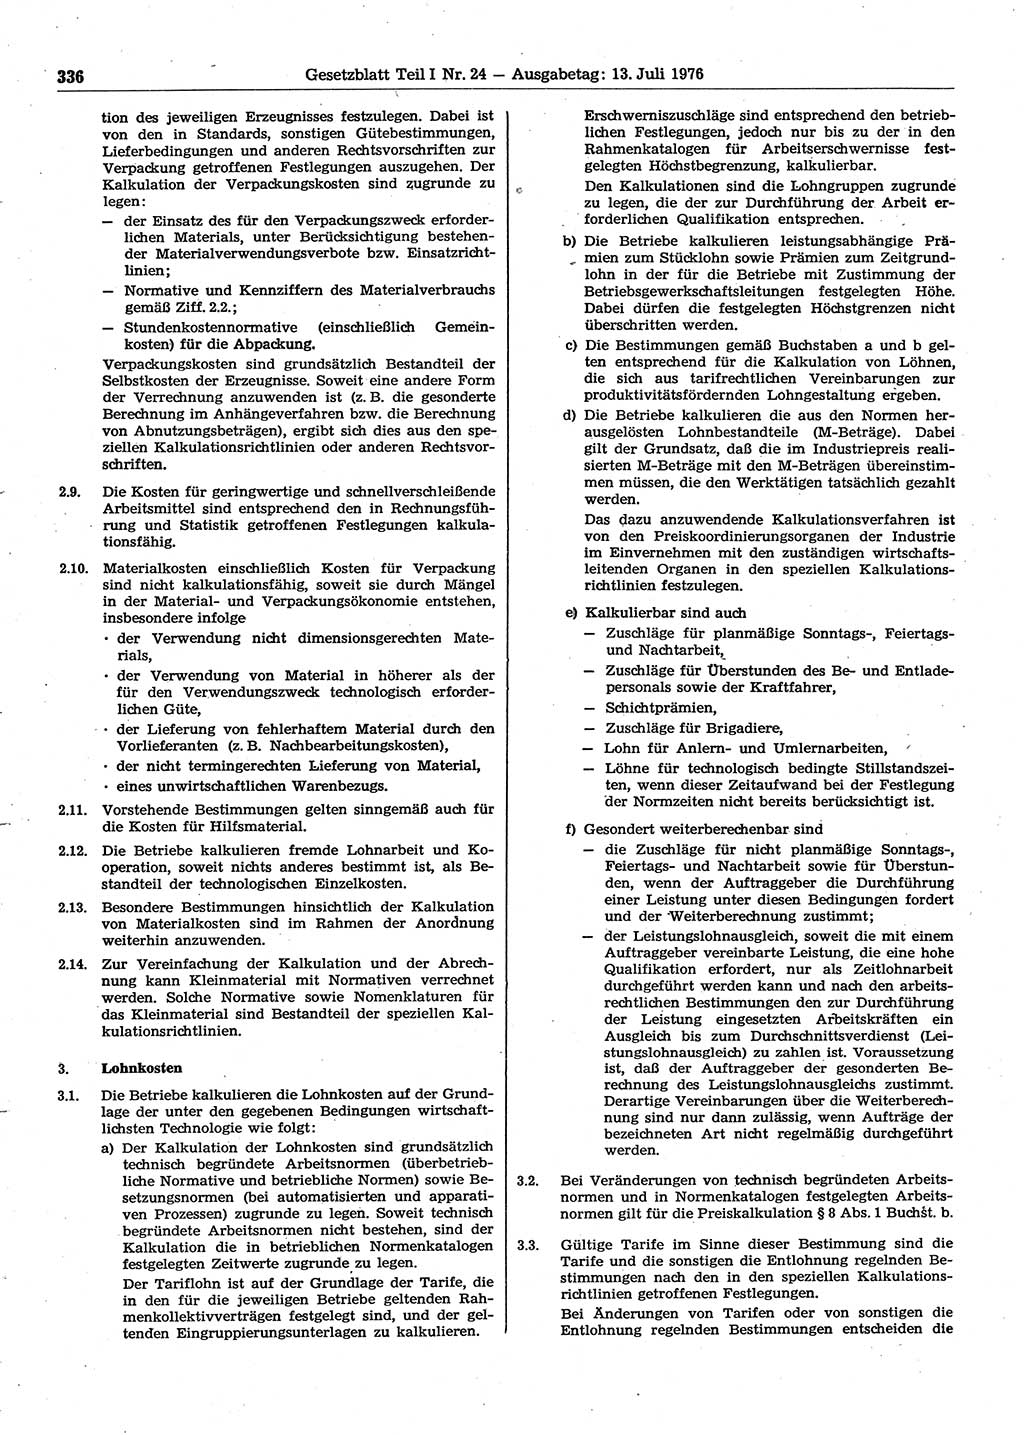 Gesetzblatt (GBl.) der Deutschen Demokratischen Republik (DDR) Teil Ⅰ 1976, Seite 336 (GBl. DDR Ⅰ 1976, S. 336)